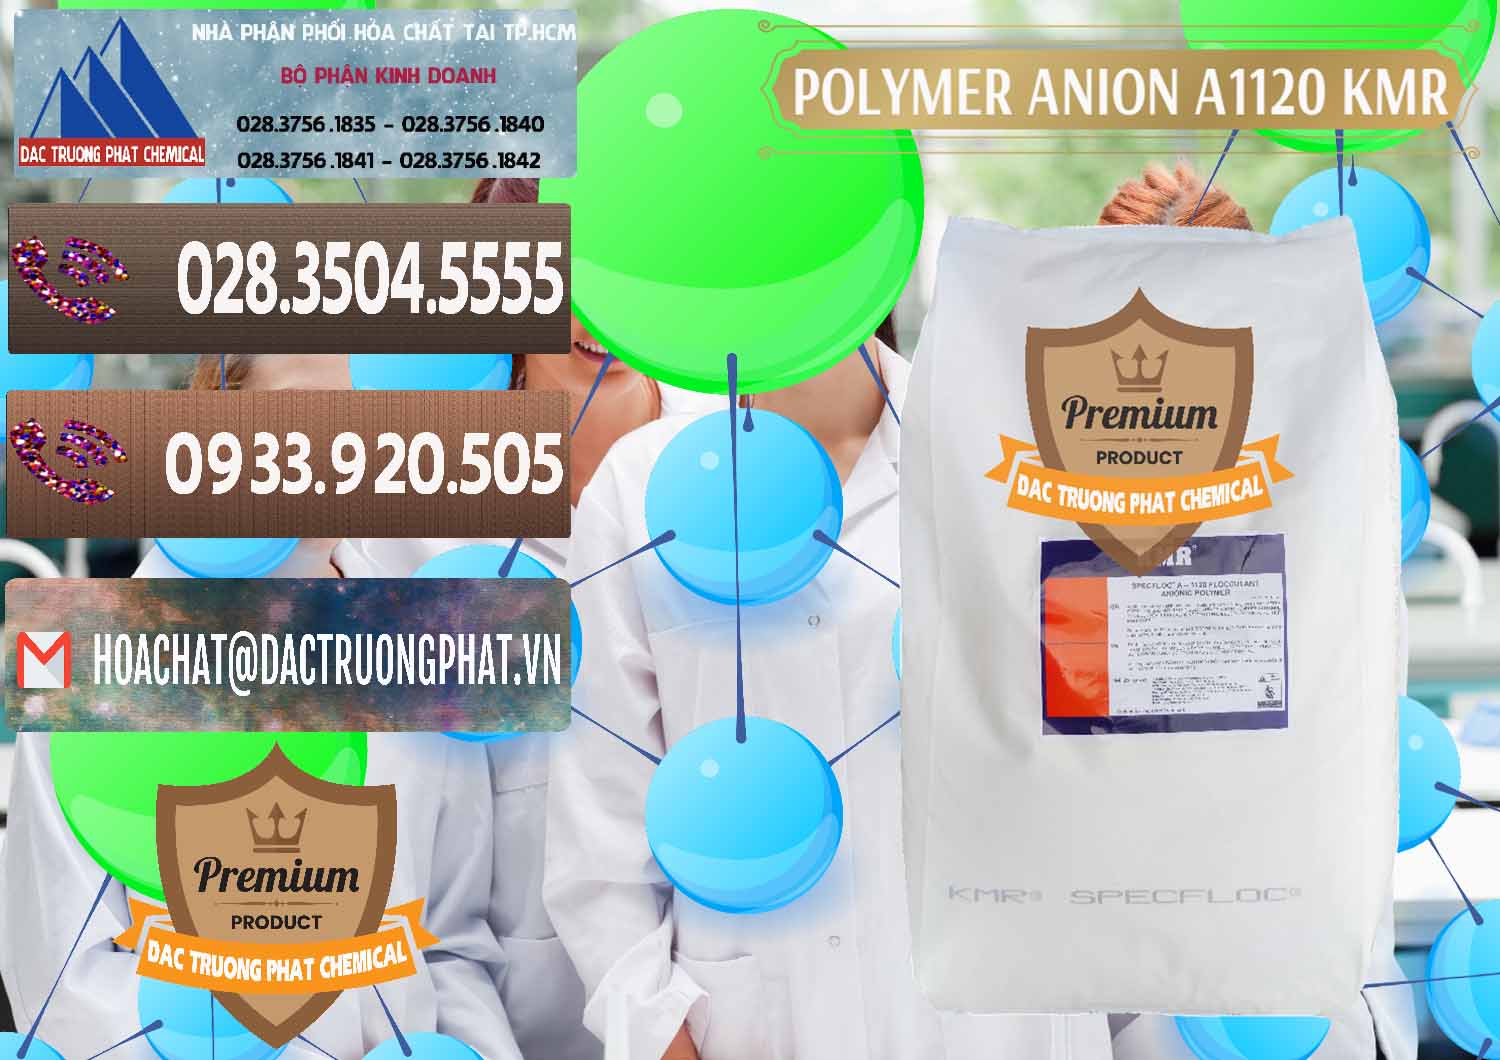 Cung cấp _ bán Polymer Anion A1120 - KMR Anh Quốc England - 0119 - Công ty cung cấp & kinh doanh hóa chất tại TP.HCM - hoachatviet.net